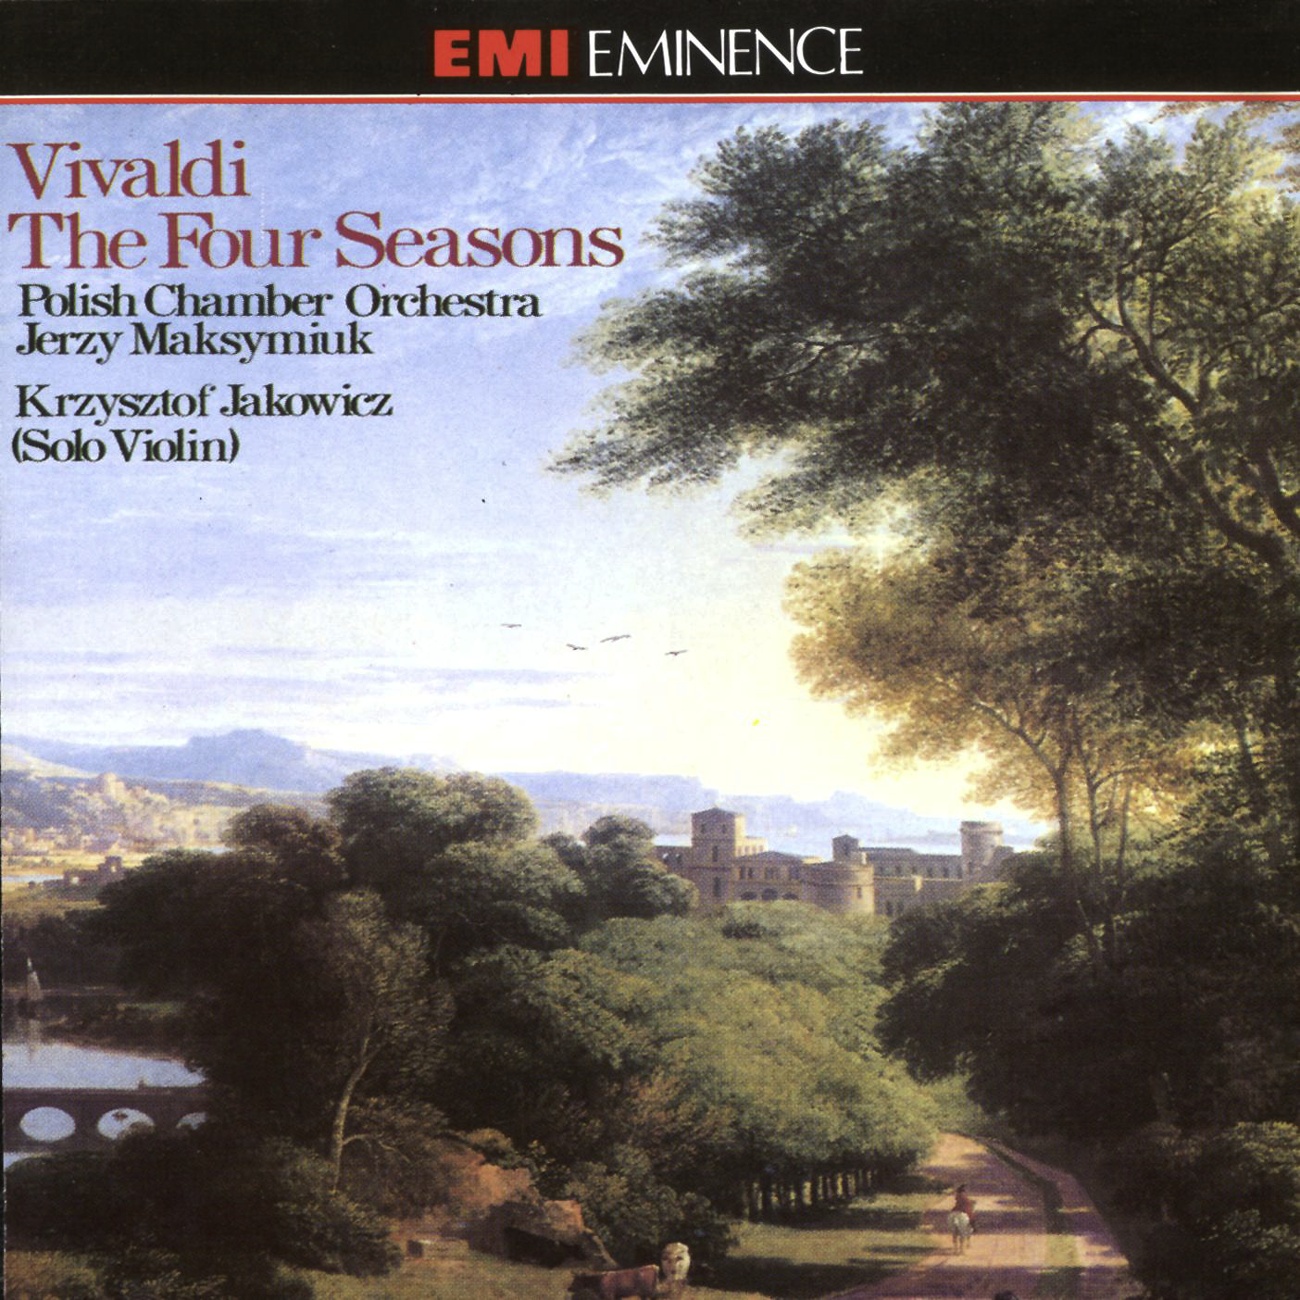 The Four Seasons Op. 8 Nos. 1-4 (1990 Digital Remaster), Concerto No. 2 in G minor (L'estate/ Summer) RV315 (Op. 8 No. 2): III.